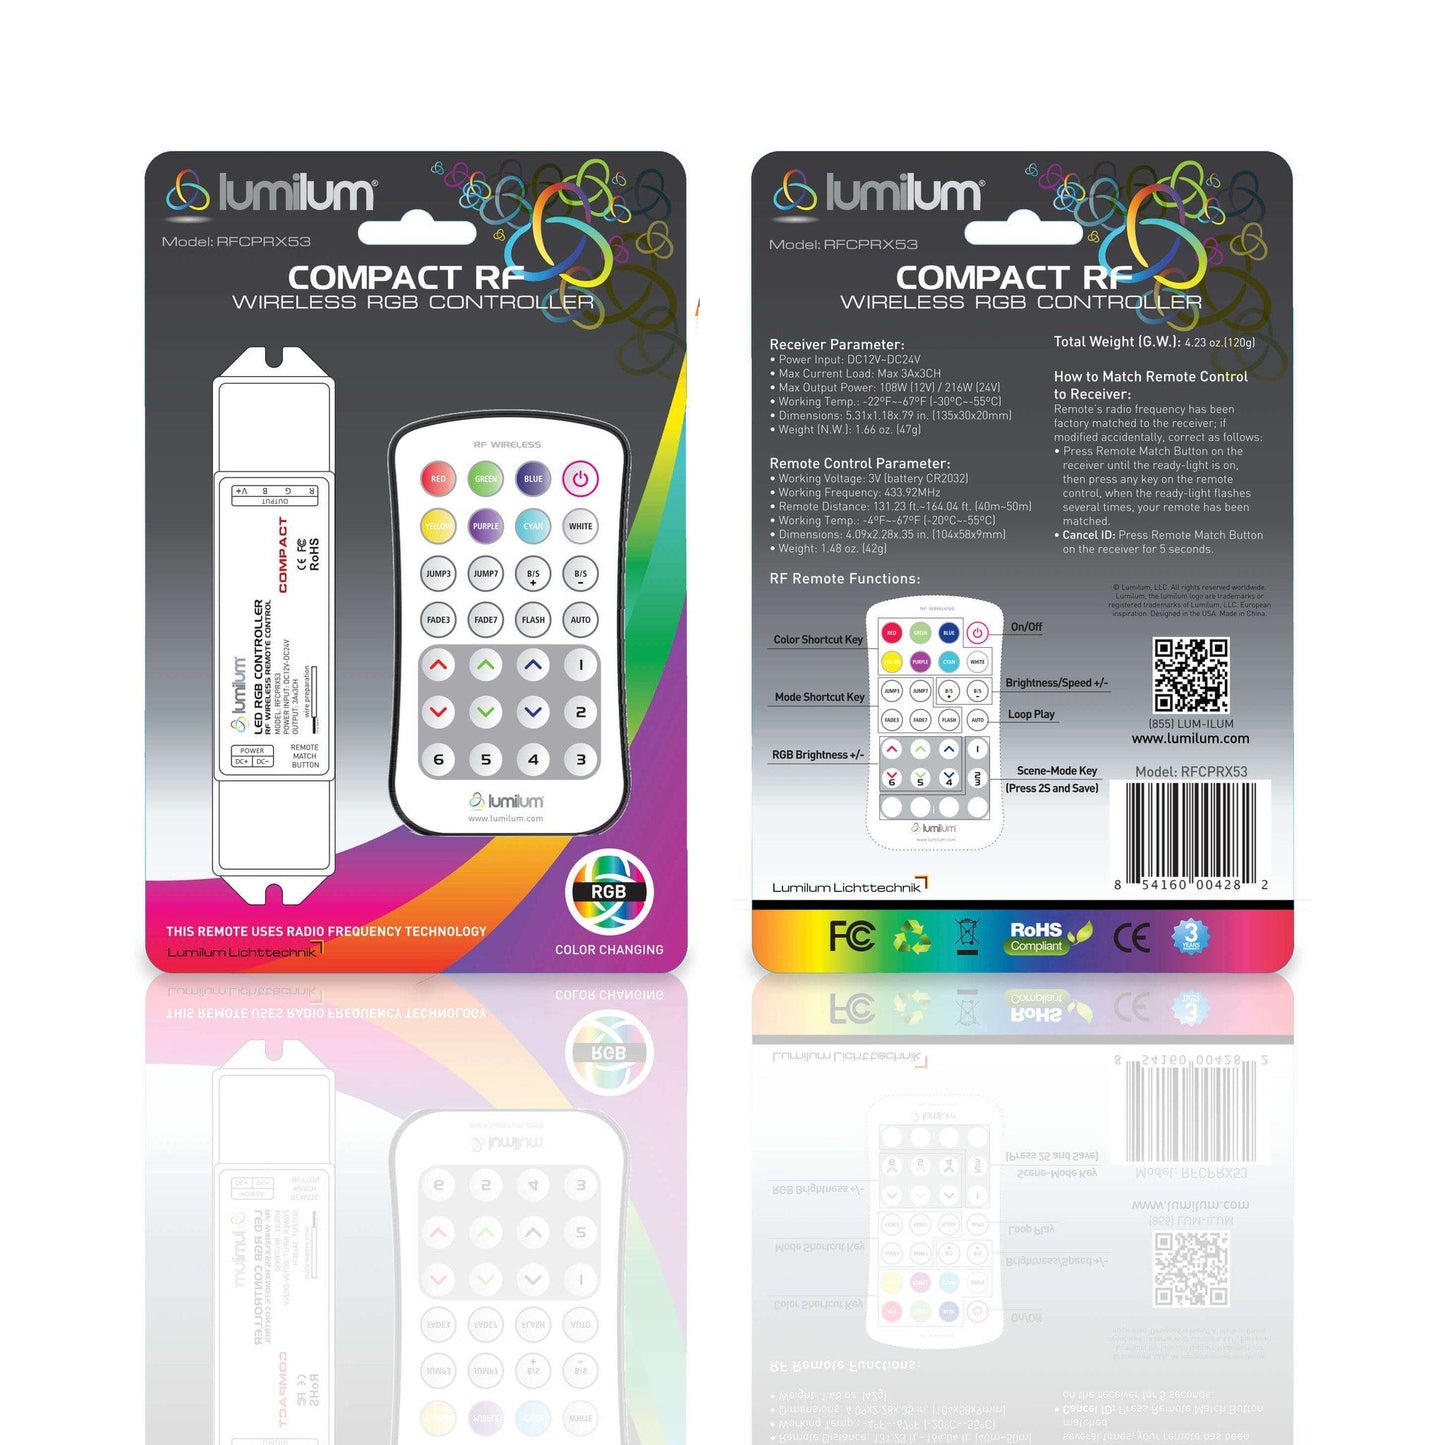 https://www.lumilum.com/cdn/shop/products/24v-led-tape-light-ip54-series-rgb-led-tape-light-kit-rgb-strip-light-kit-lumilum-790140_1445x.jpg?v=1611689846